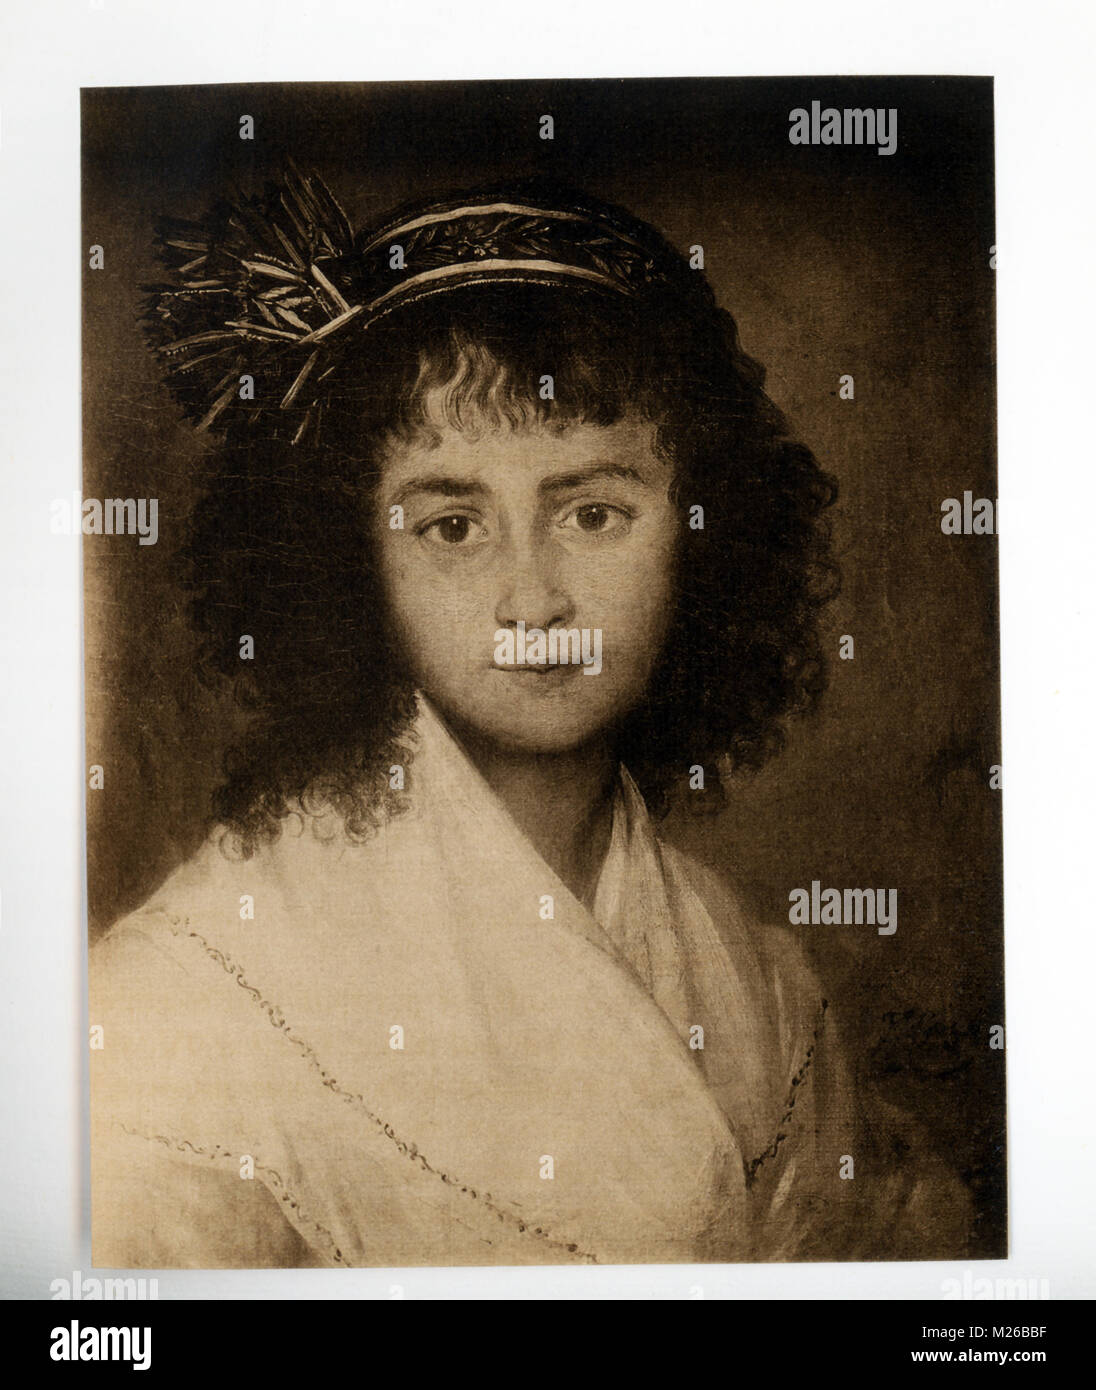 Francisco Goya (1746-1828) era un pittore spagnolo e printmaker. Considerato tra i più importanti artisti spagnoli del tempo egli è onorato come uno degli ultimi dei vecchi maestri e uno del primo dei rinoceronti. I suoi primi dipinti erano ottimisti e jolly, con il passare degli anni, le sue opere divennero molto pessimista. Un altamente considerato pittore ritratto, Goya fece questo ritratto di una giovane ragazza spagnola. Foto Stock